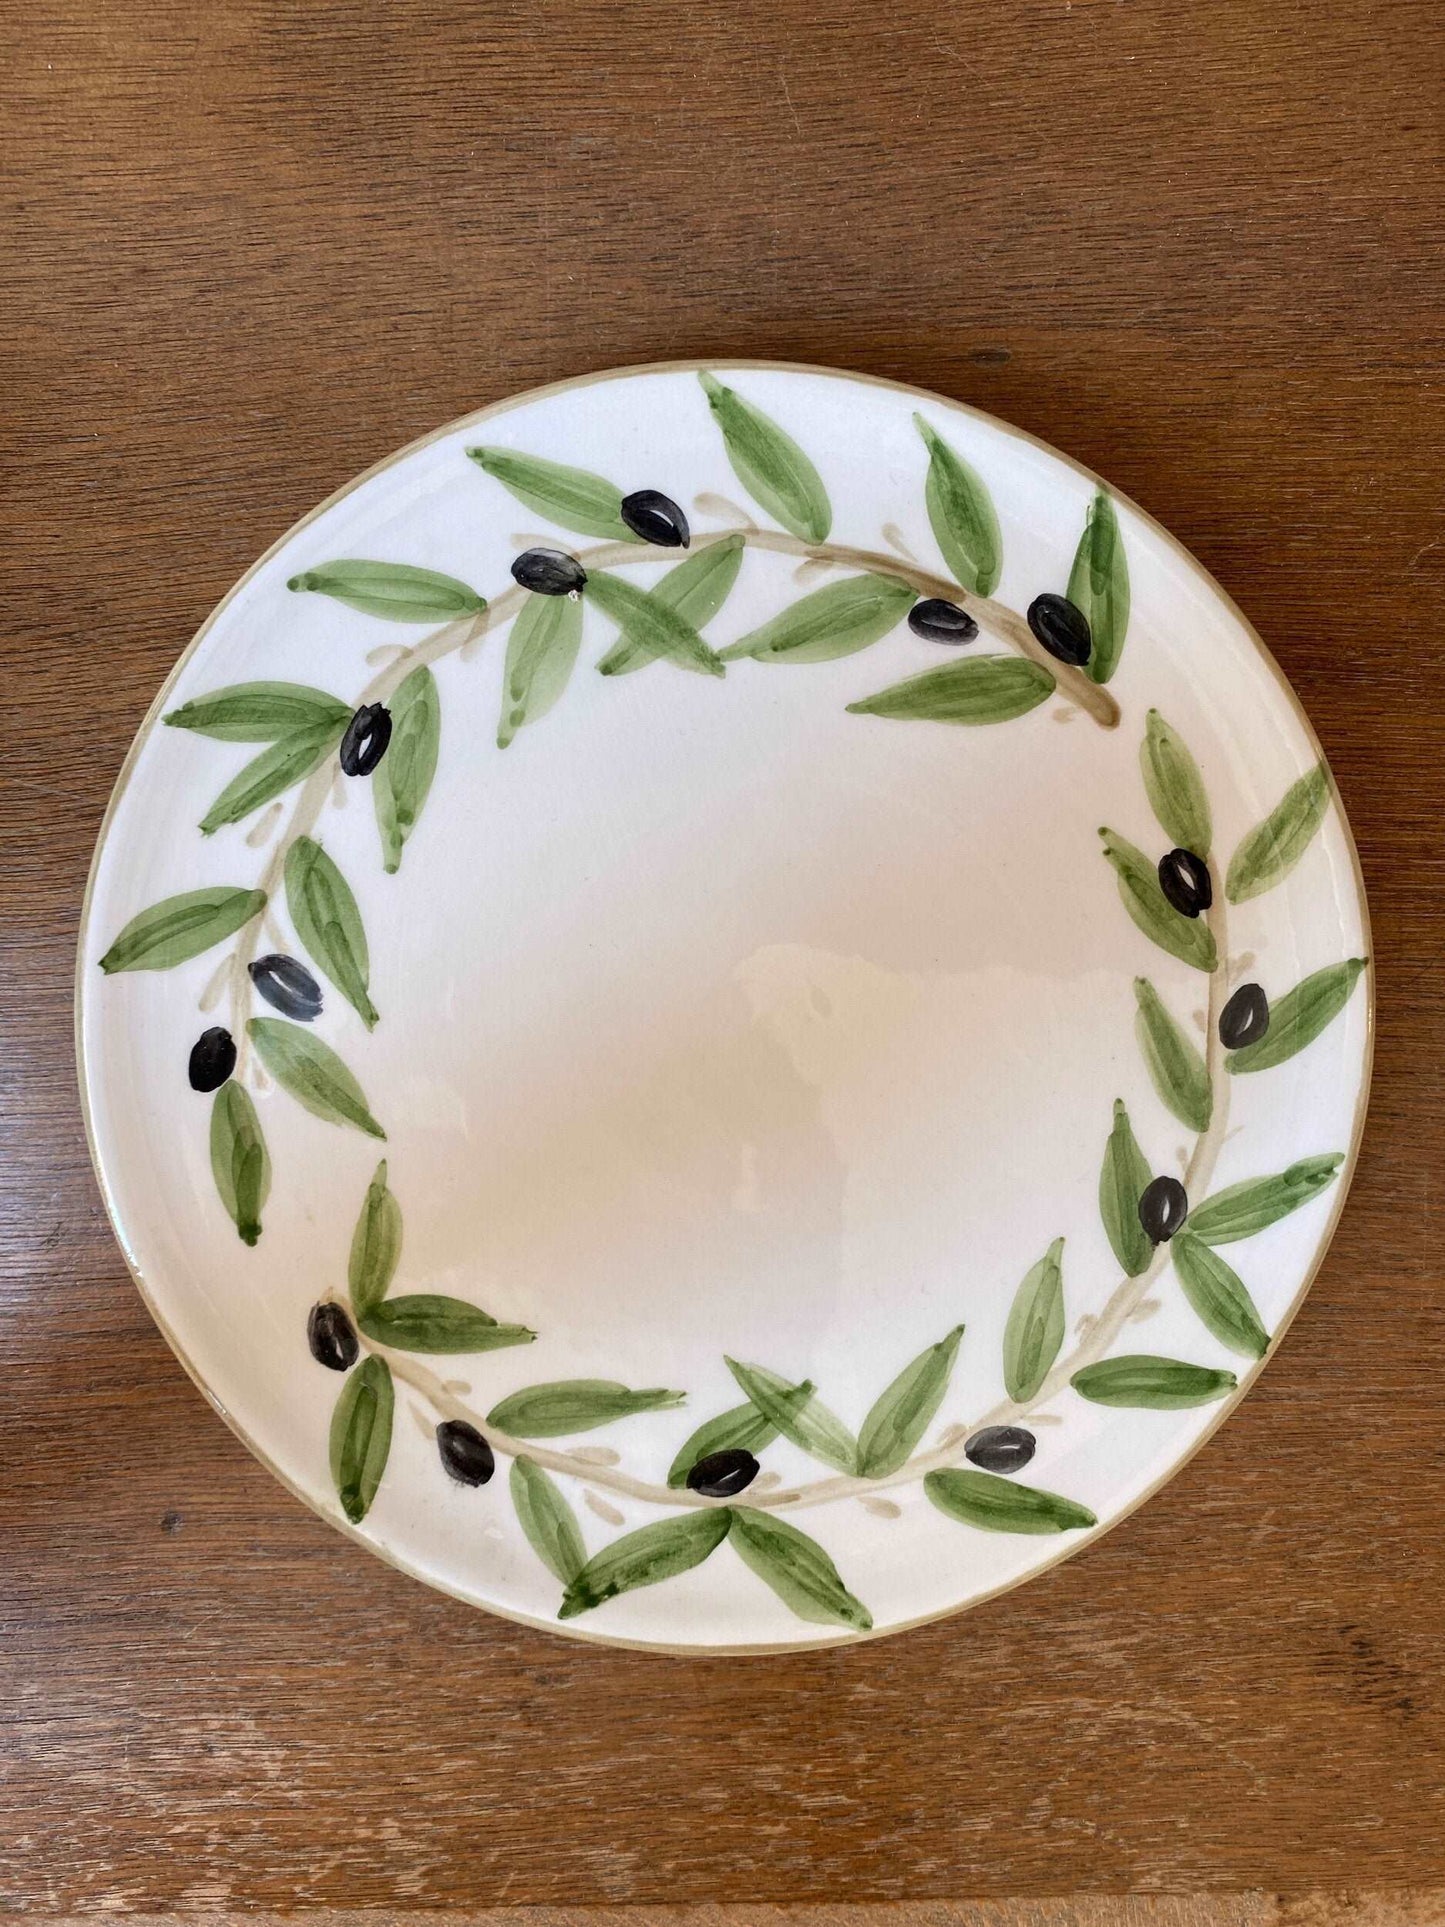 nisf-jbeil-dinner-plate-olive-green-leaves-border-wreath